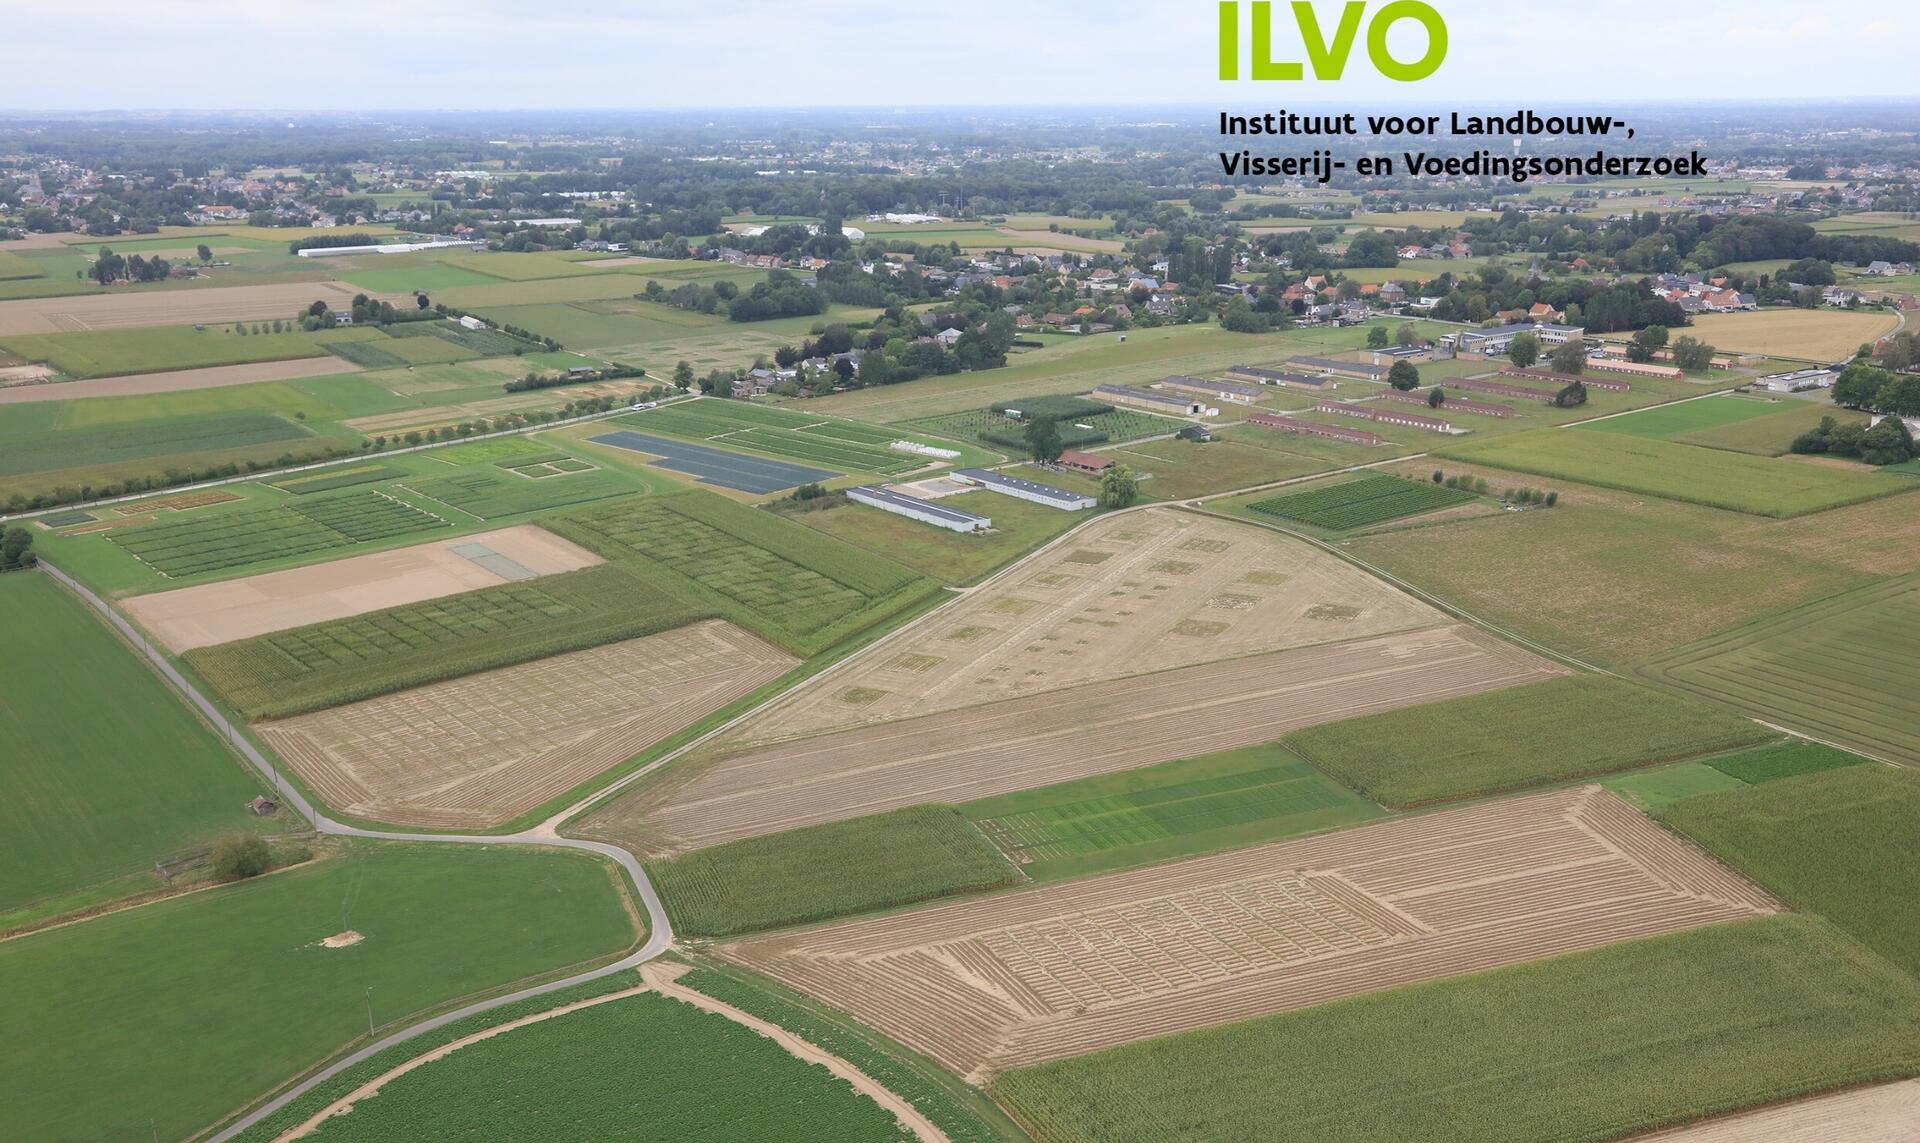 ILVO Fields View